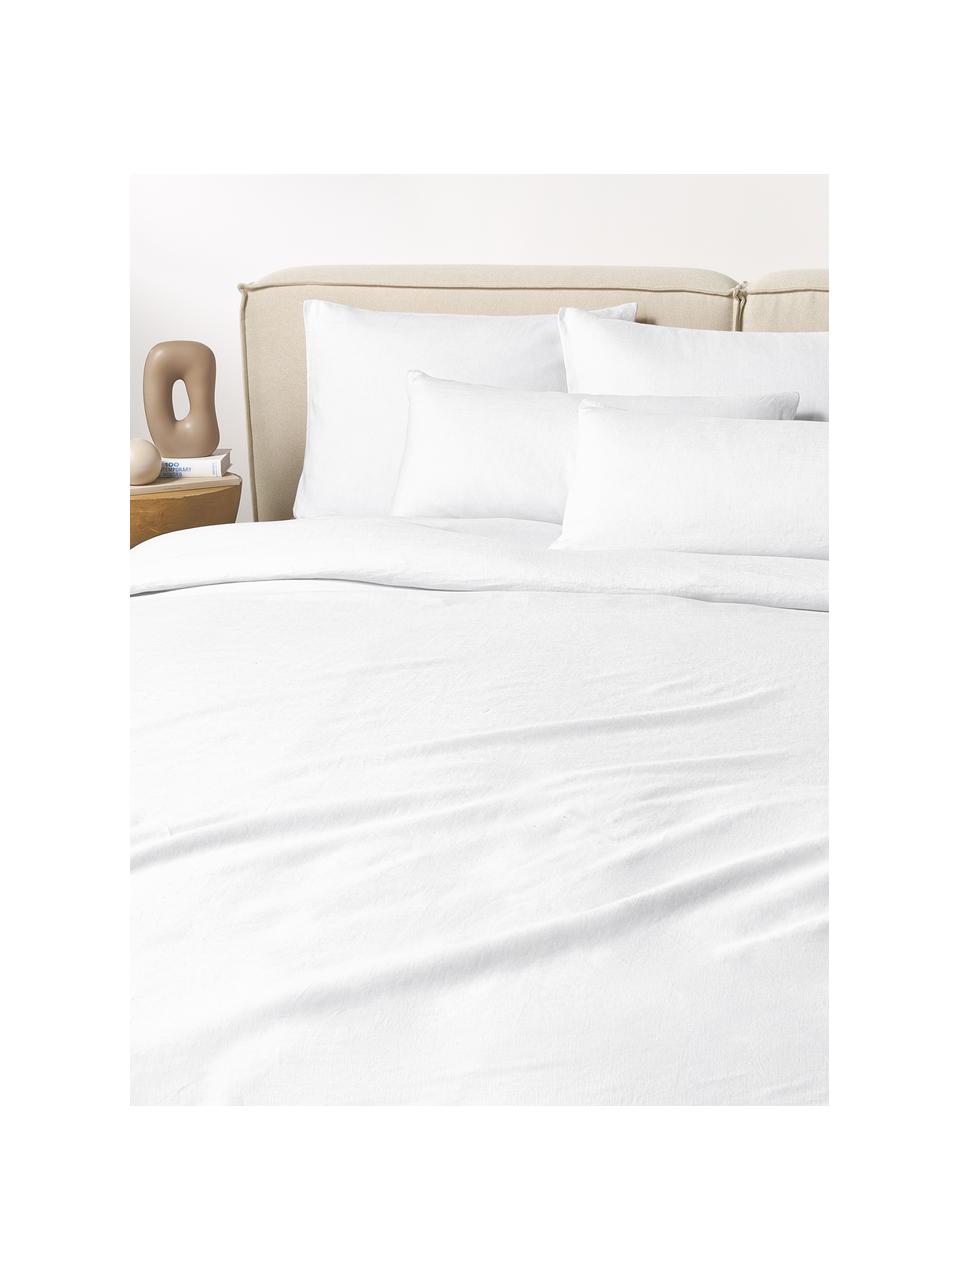 Gewaschener Leinen-Bettdeckenbezug Airy, Weiß, B 200 x L 200 cm